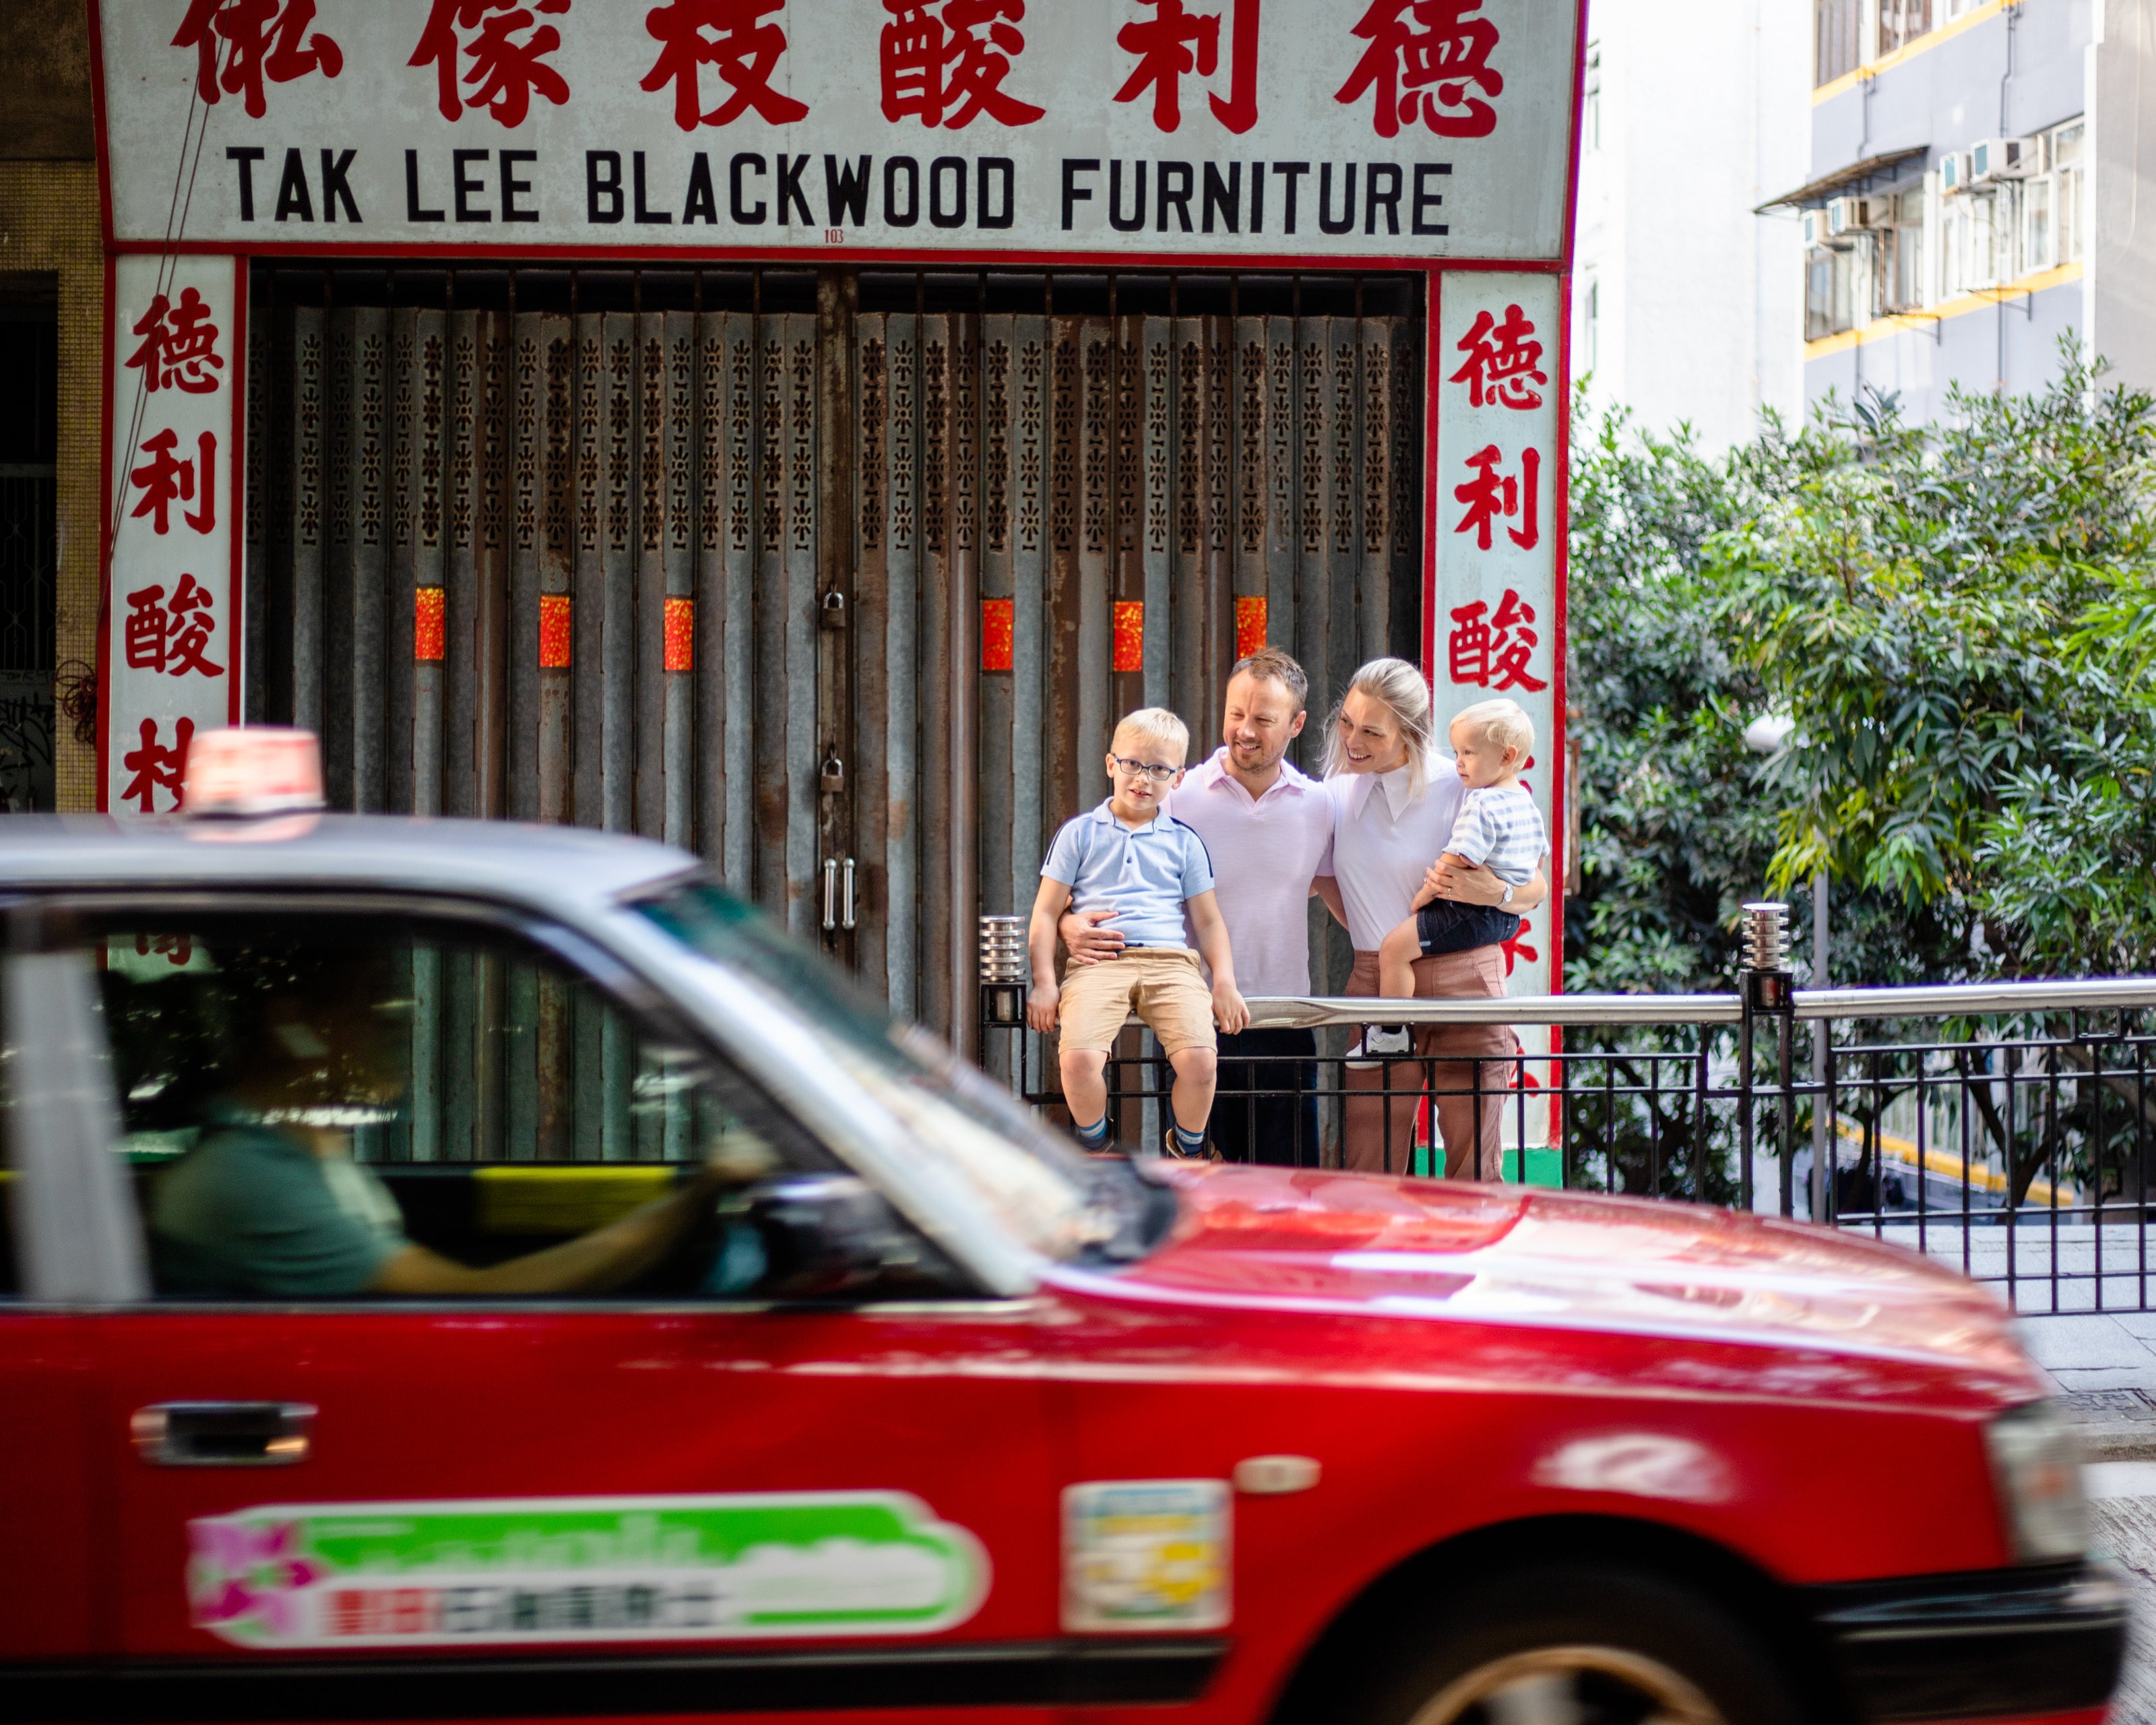 Family photo Hong Kong with a red Hong Kong taxi driving past 